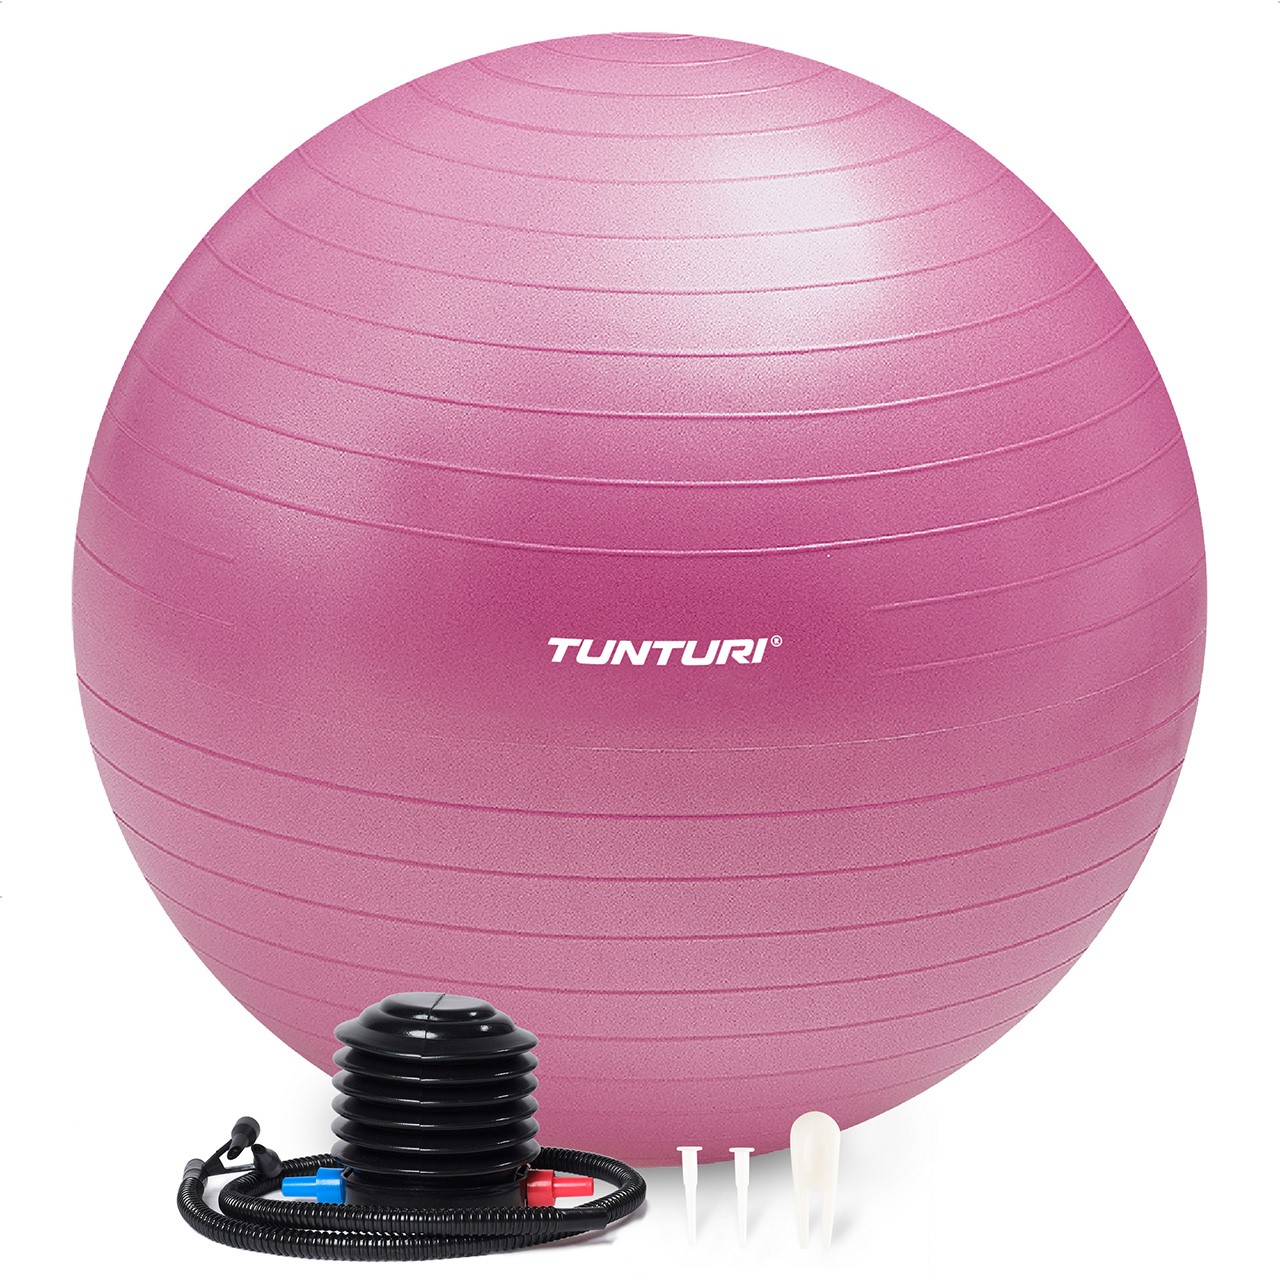 Tunturi Gym Ball - Anti Burst ABS 65 cm purple